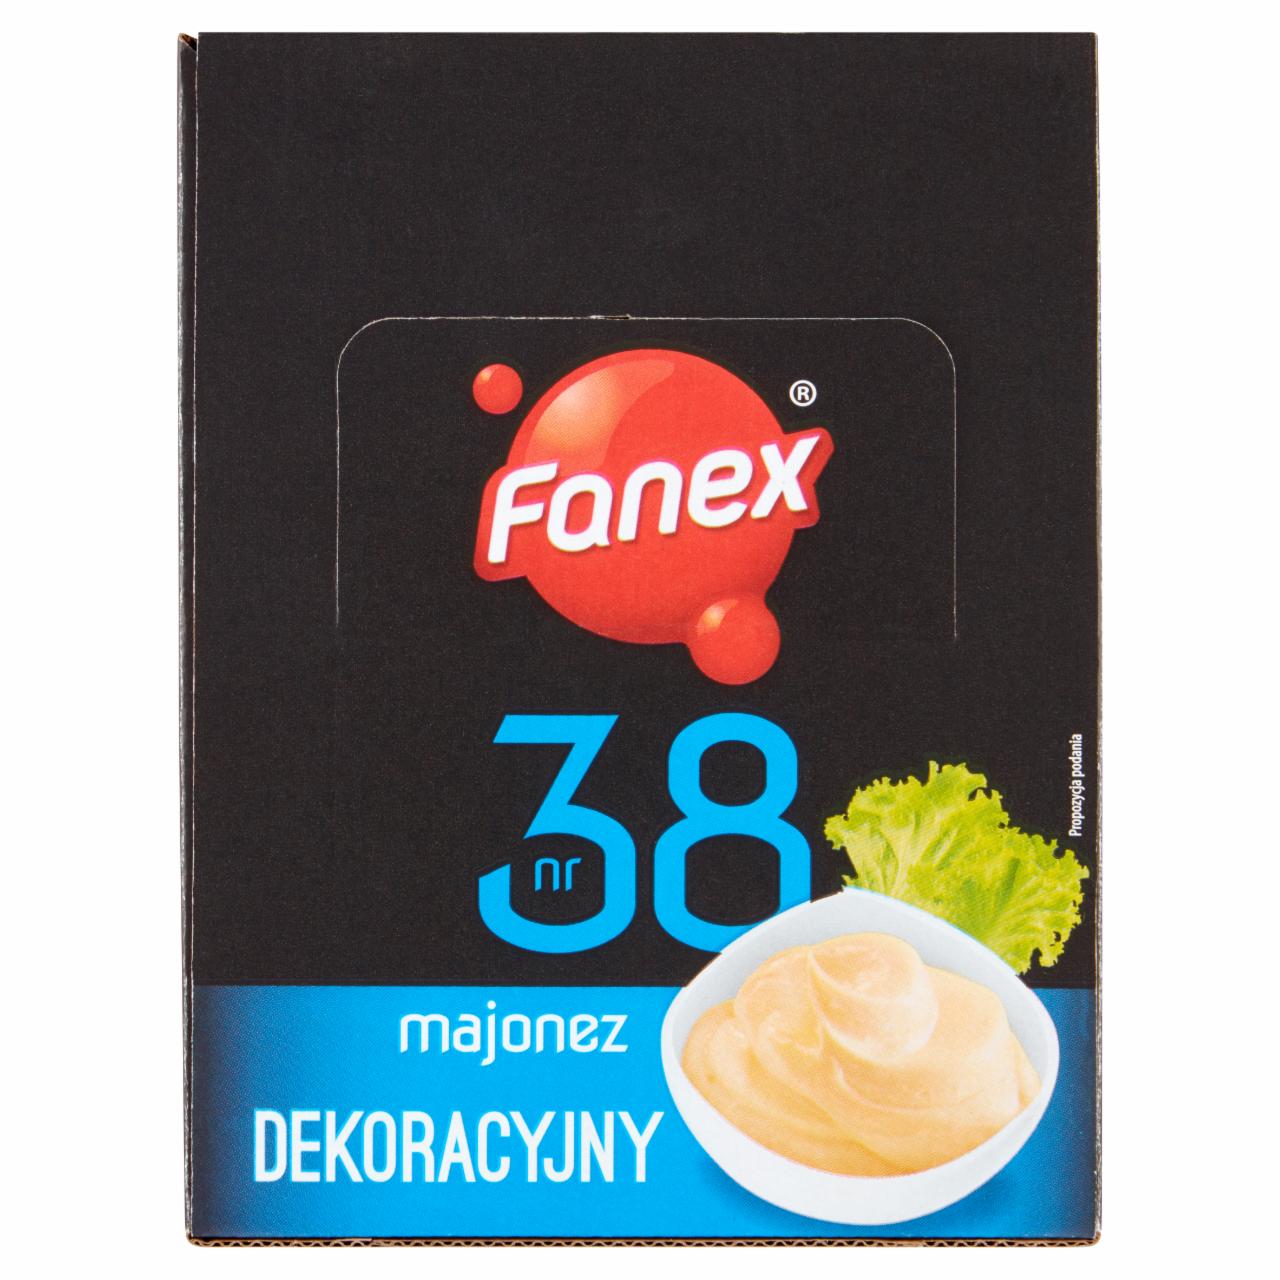 Zdjęcia - Fanex Majonez dekoracyjny 1,2 kg (120 x 10 g)